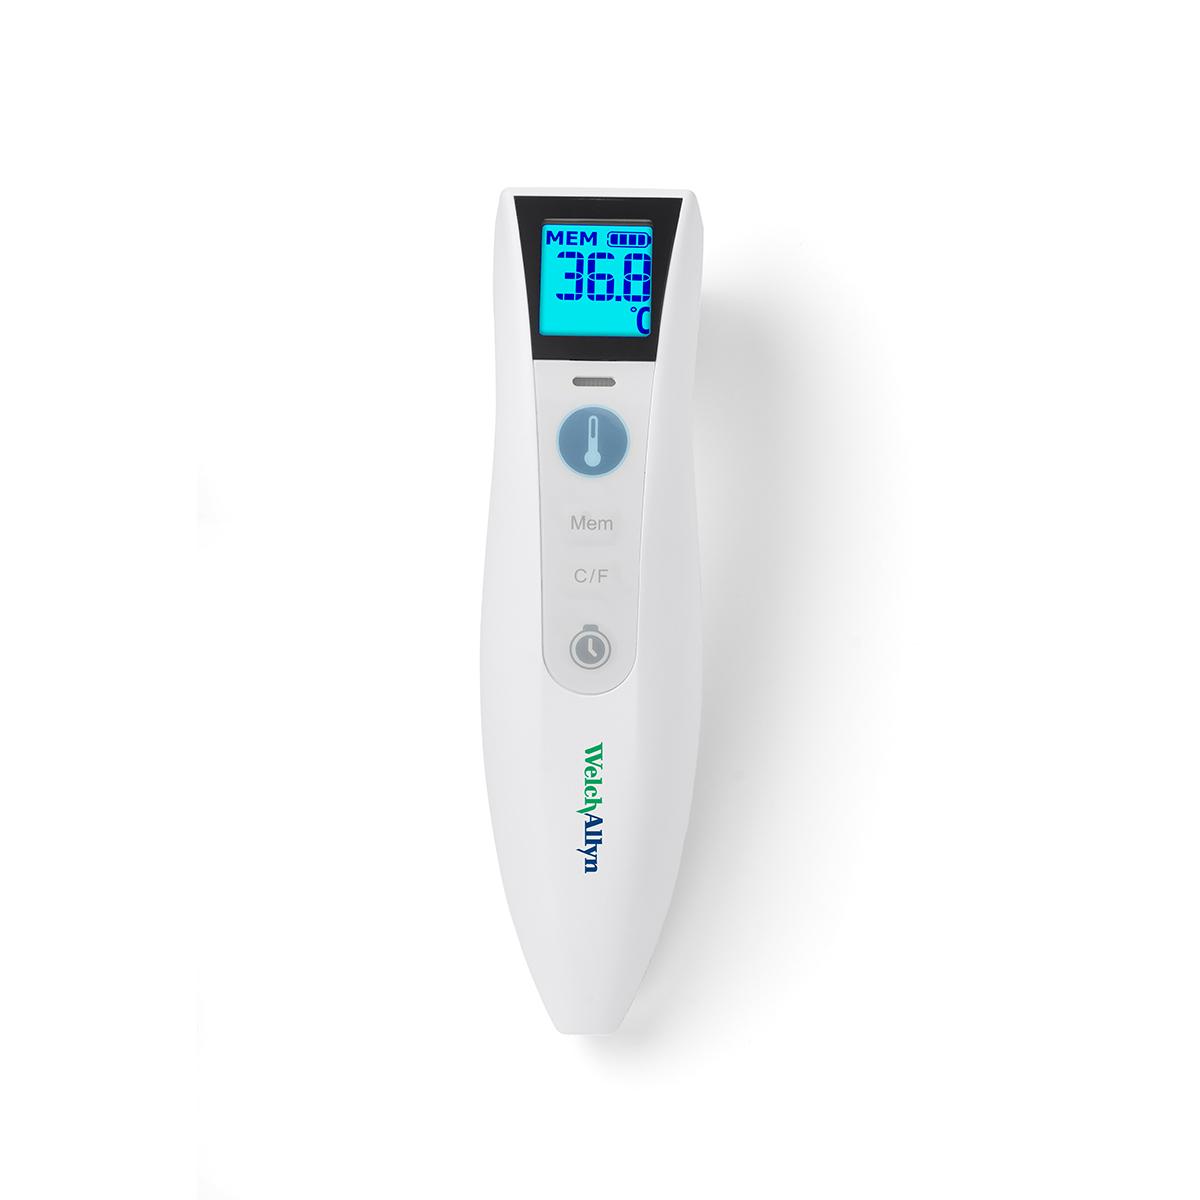 Le thermomètre sans contact Welch Allyn CareTemp est blanc, avec un affichage numérique bleu vif